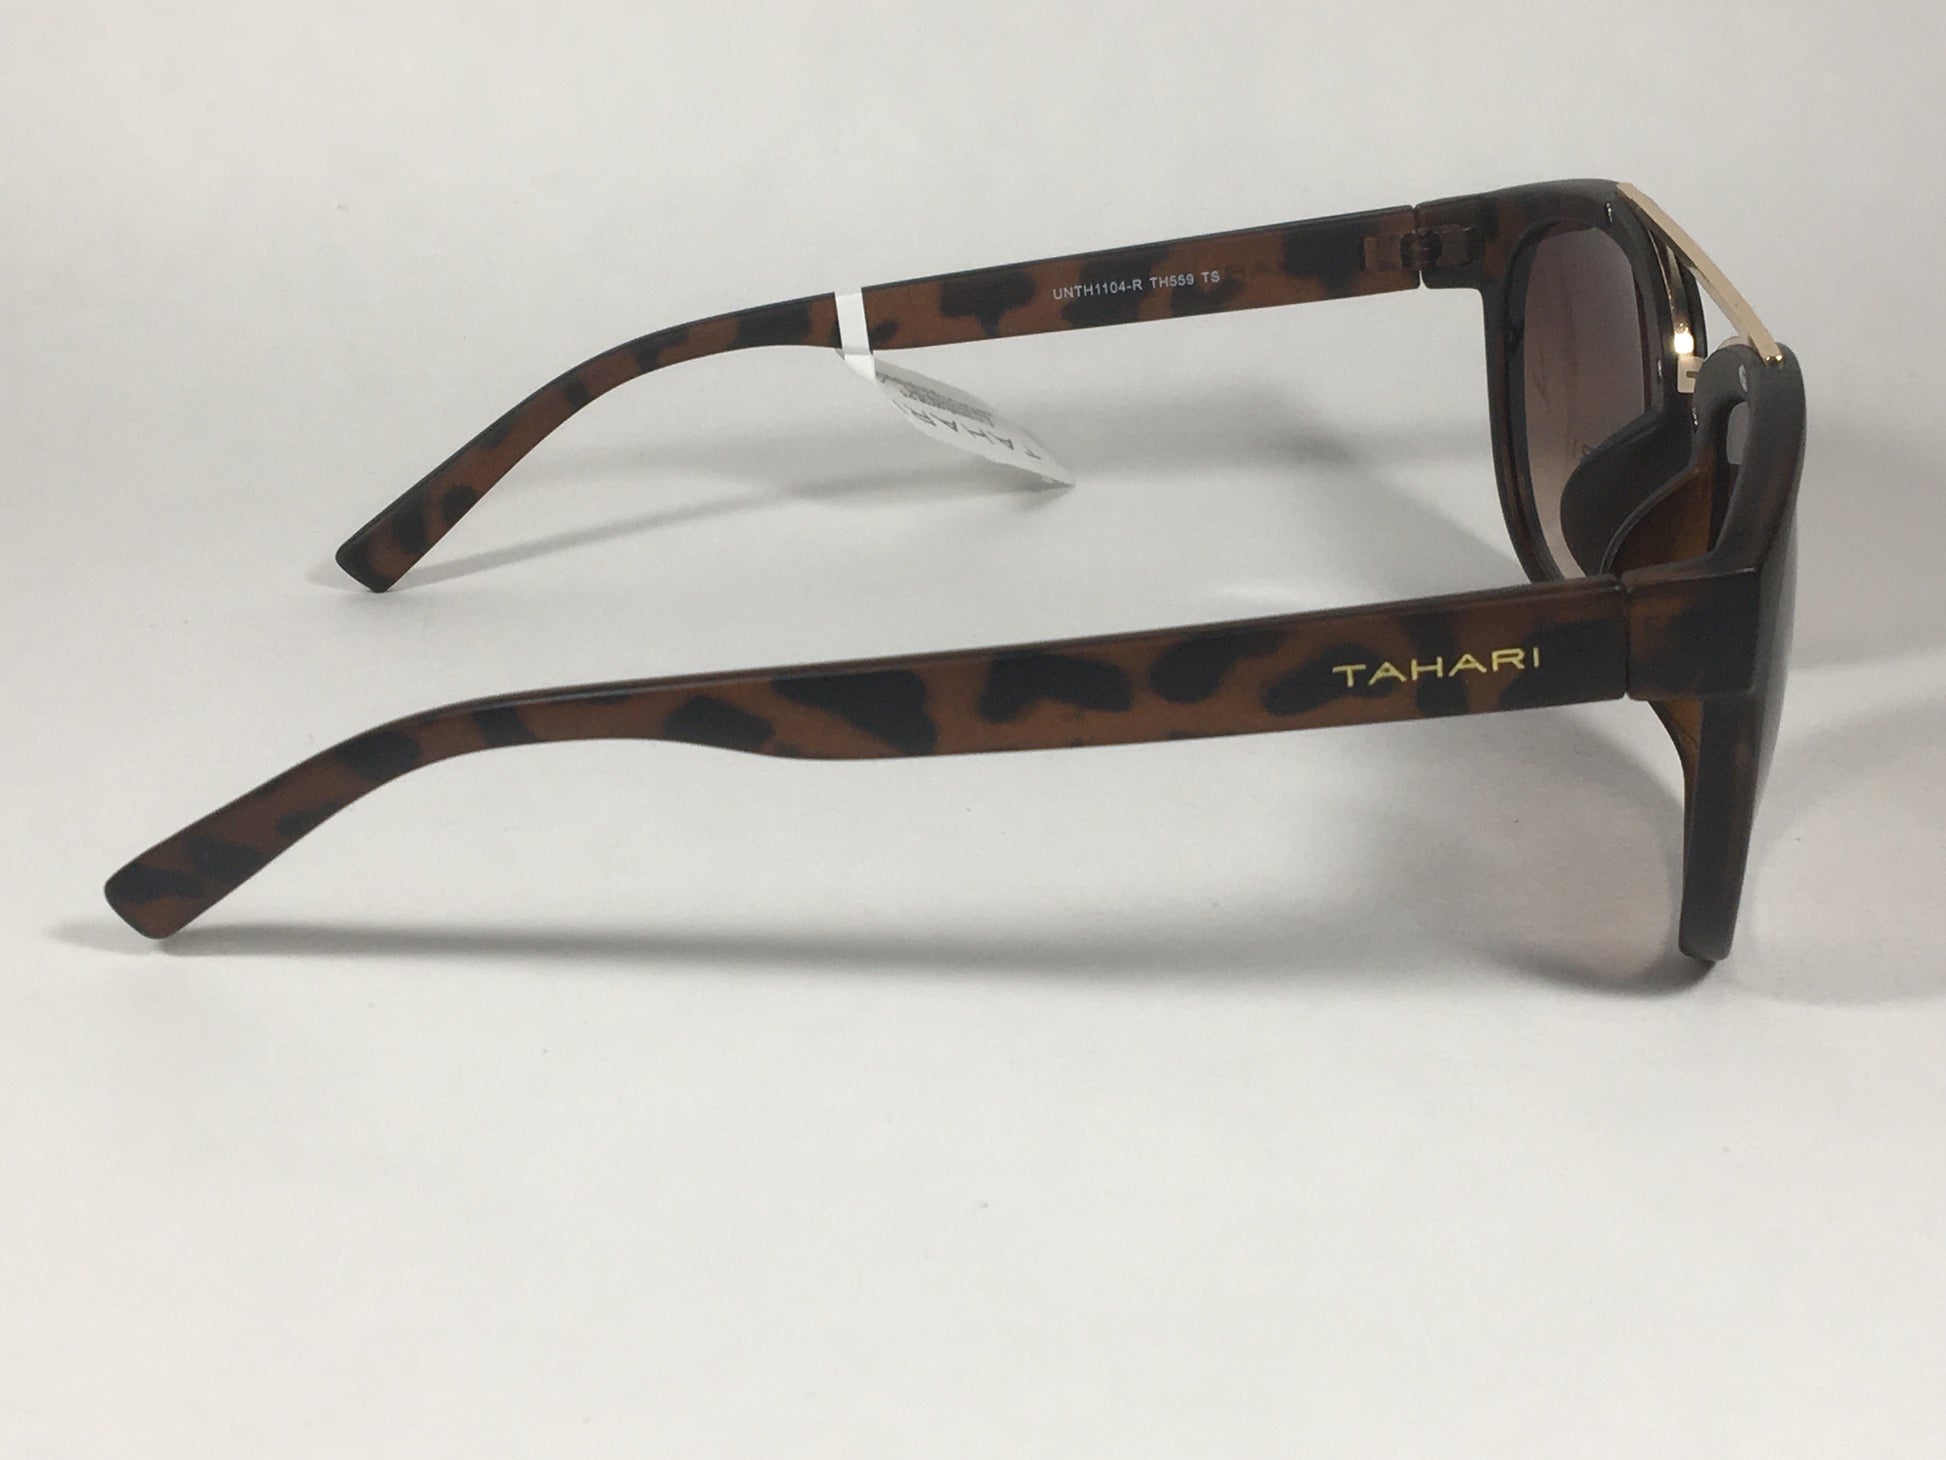 Tahari Brow Bar Designer Sunglasses Tortoise Brown Gold Brown Gradient Lens TH559 TS - Sunglasses